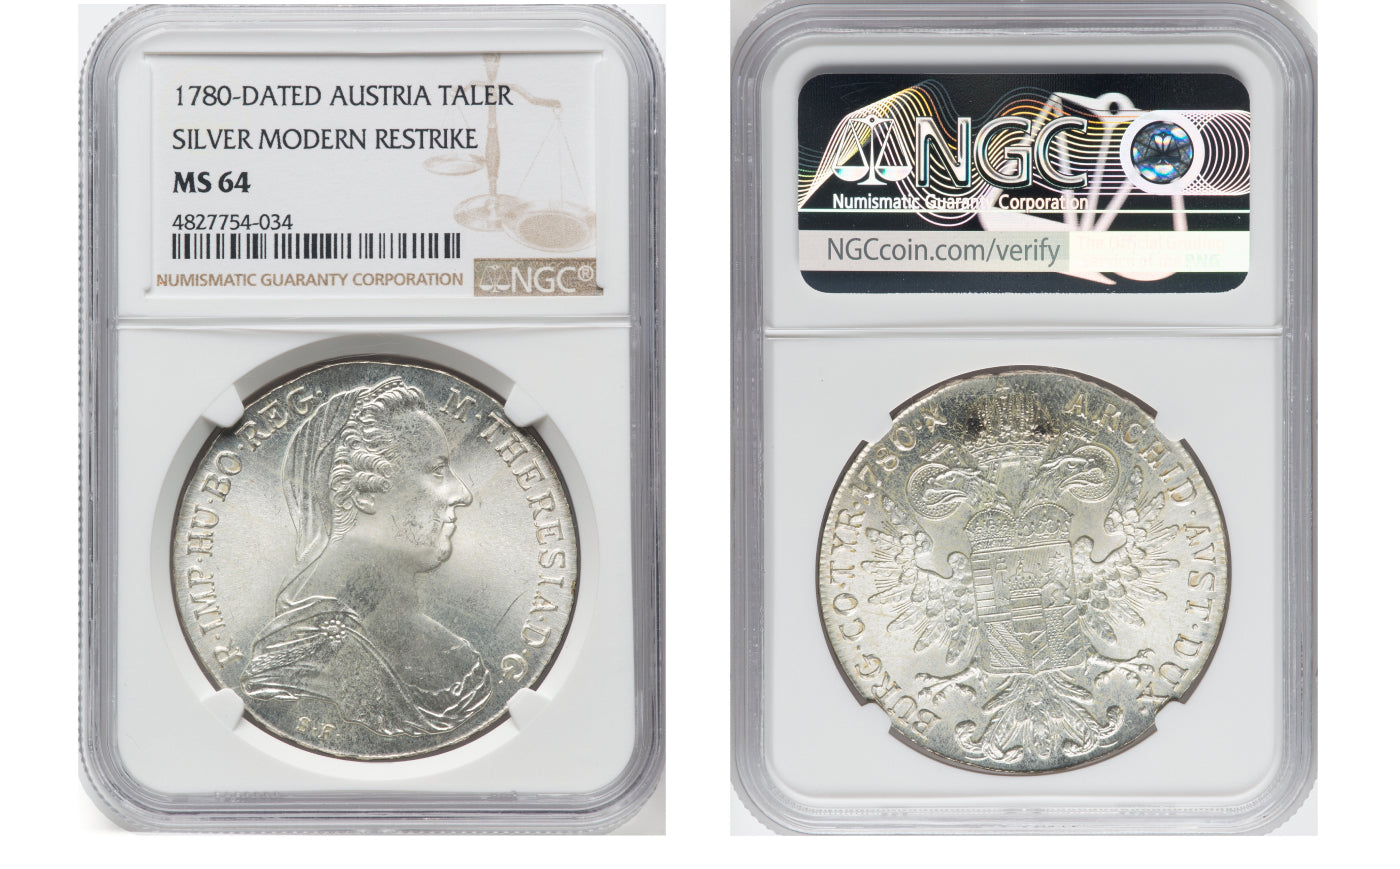 オーストリア帝国の実質的な女帝マリア・テレジアの1ターラー銀貨とは